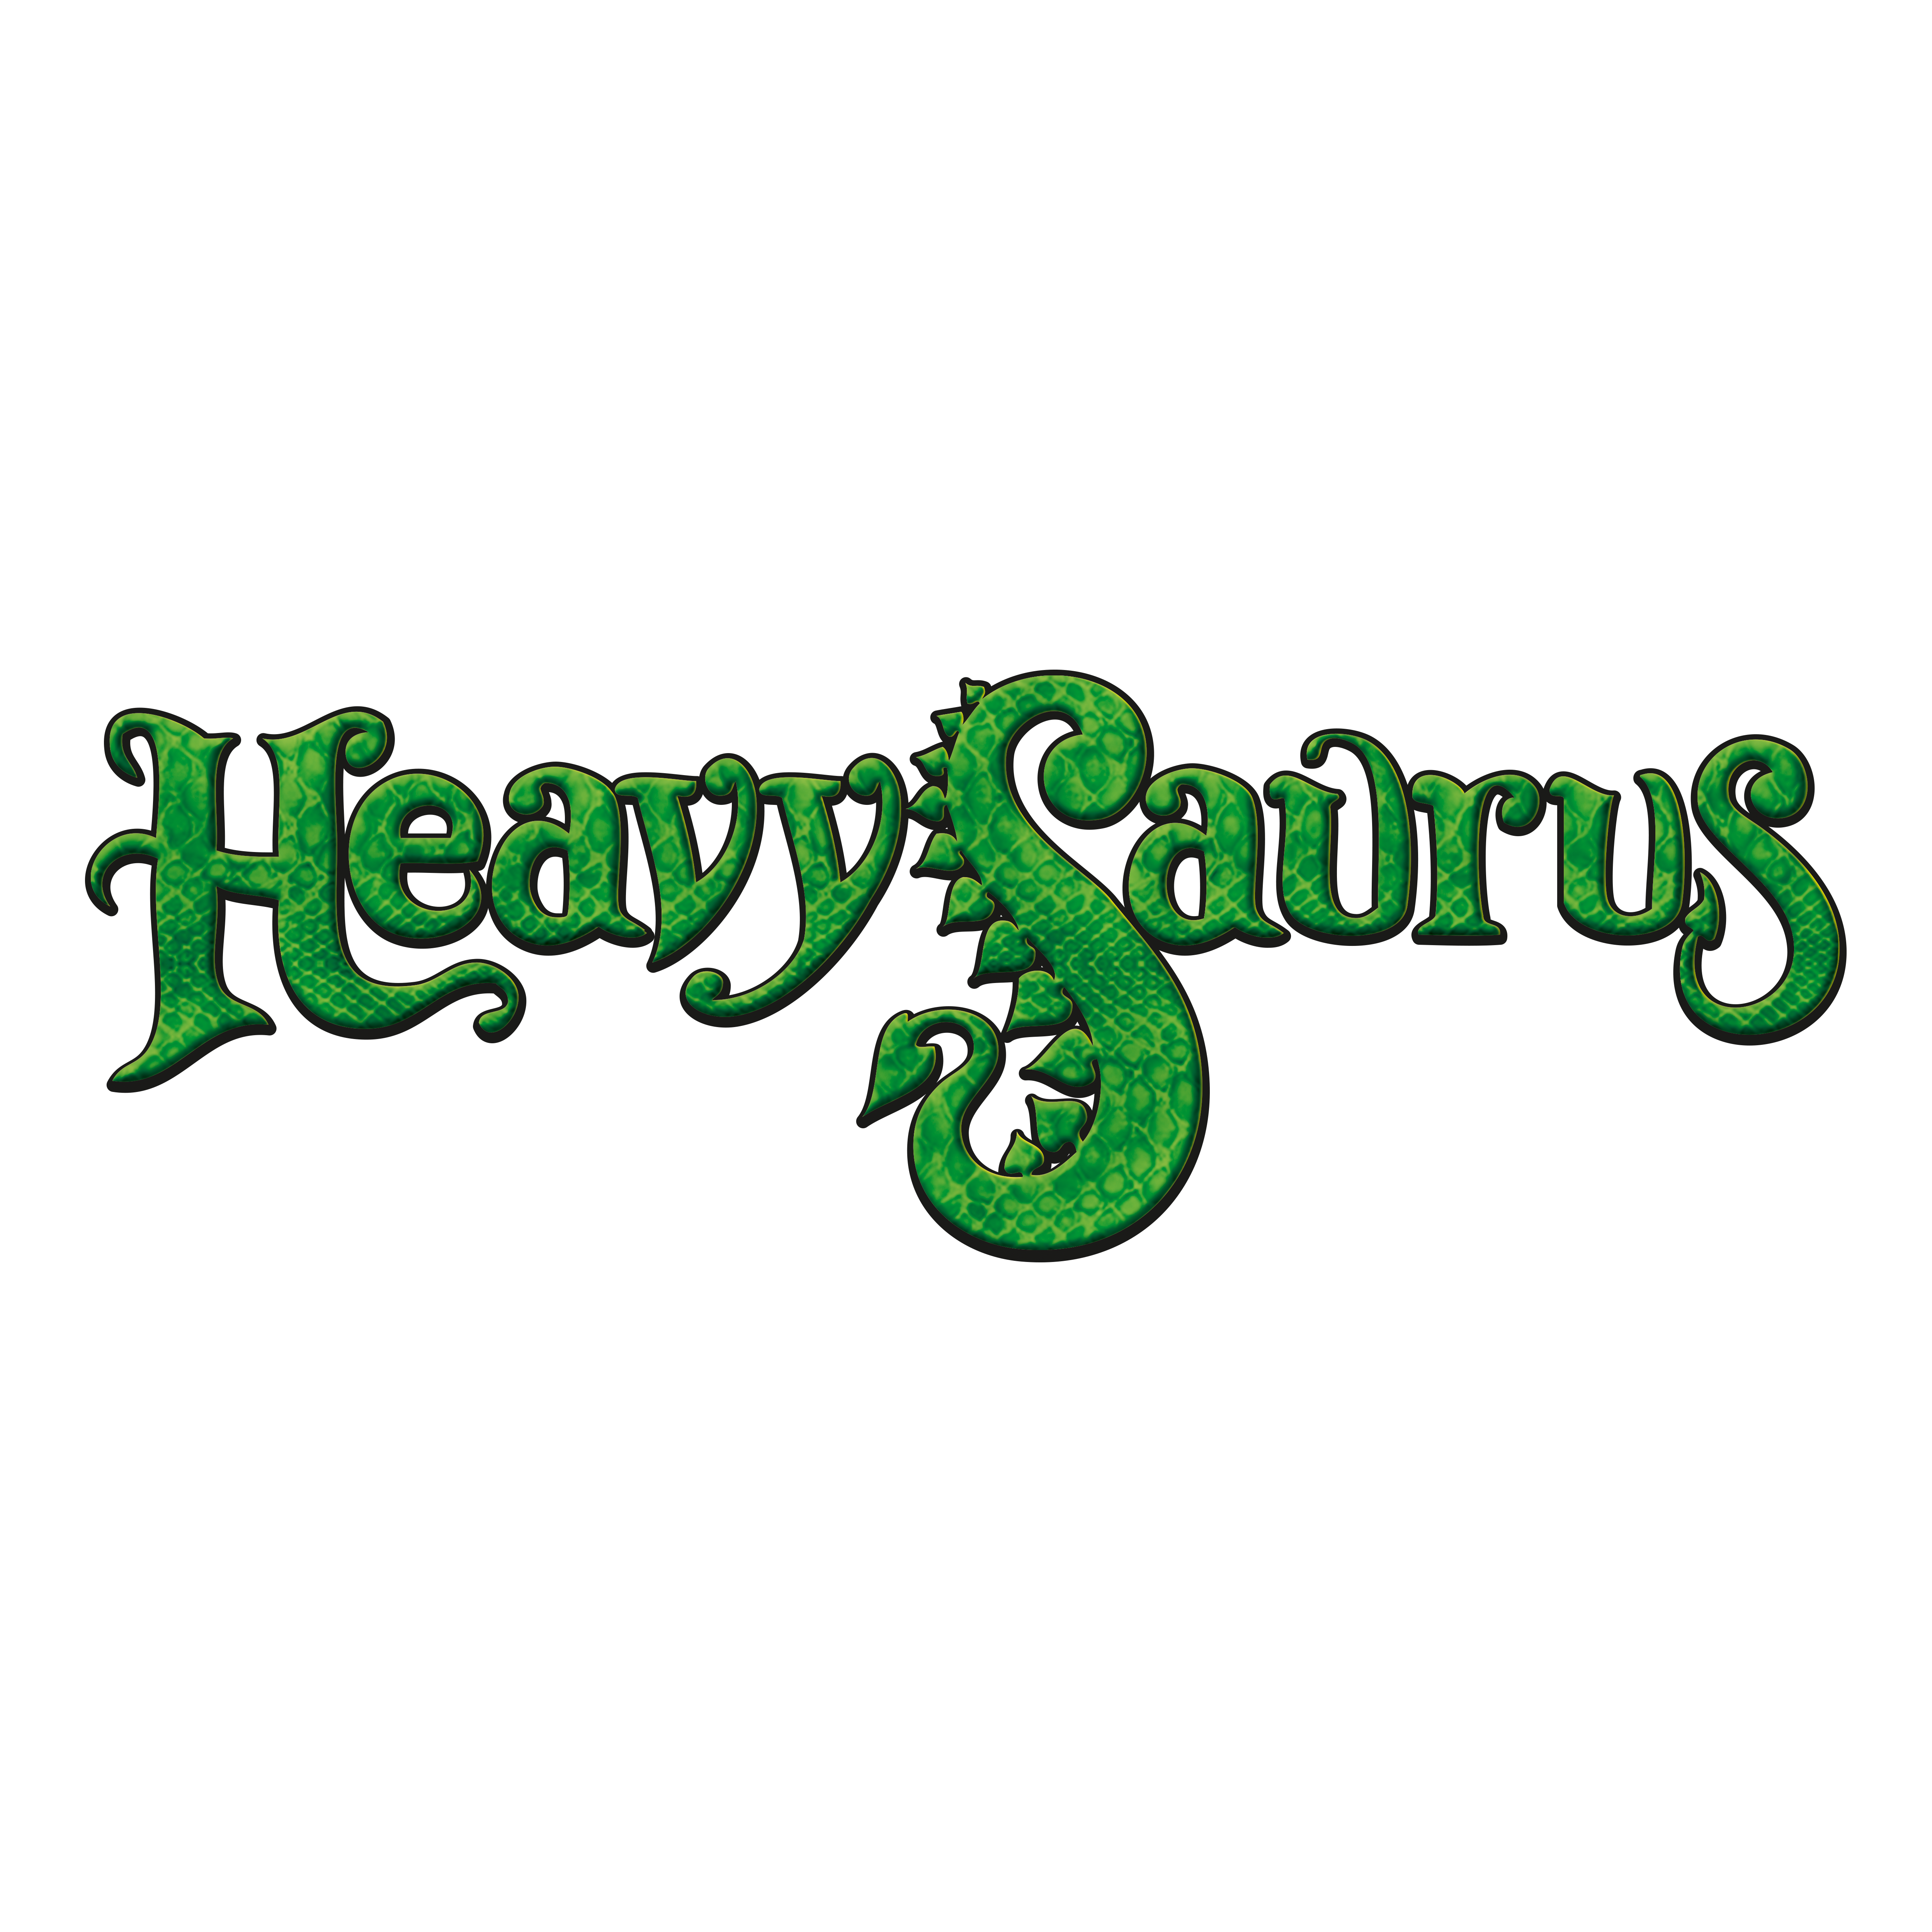 Heavysaurus schließt sich dem BRANDORA Licensing Hub an